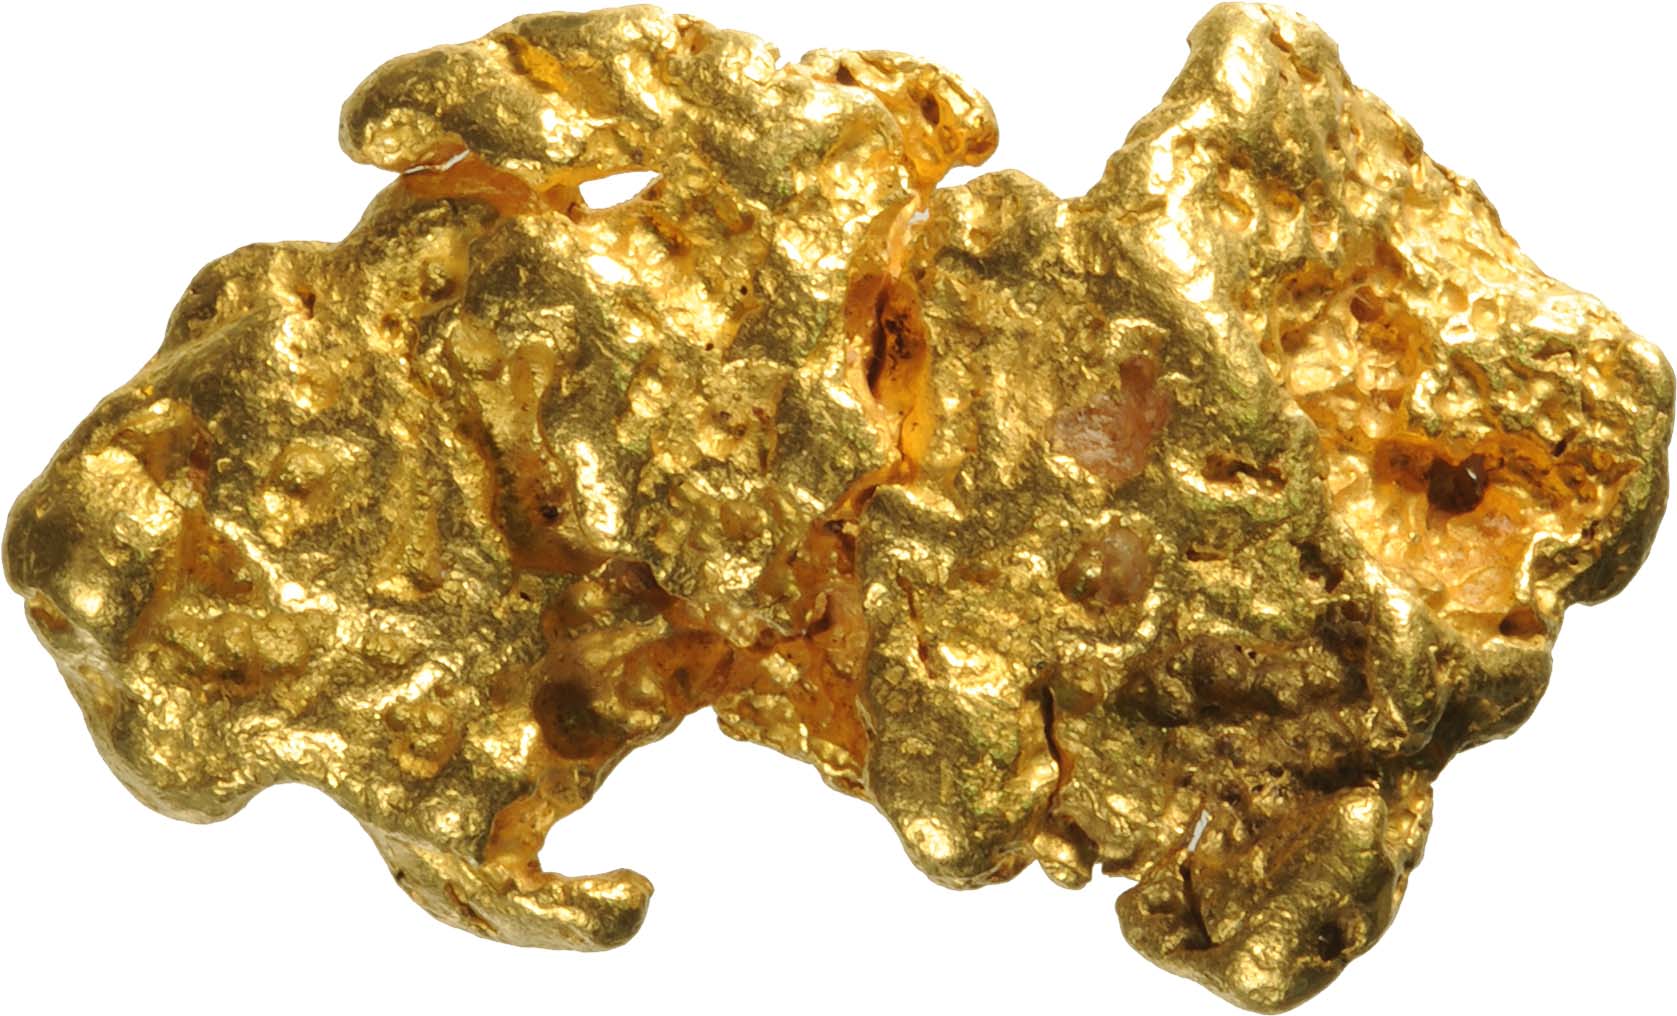  سنگ فلزهای قیمتی طلا